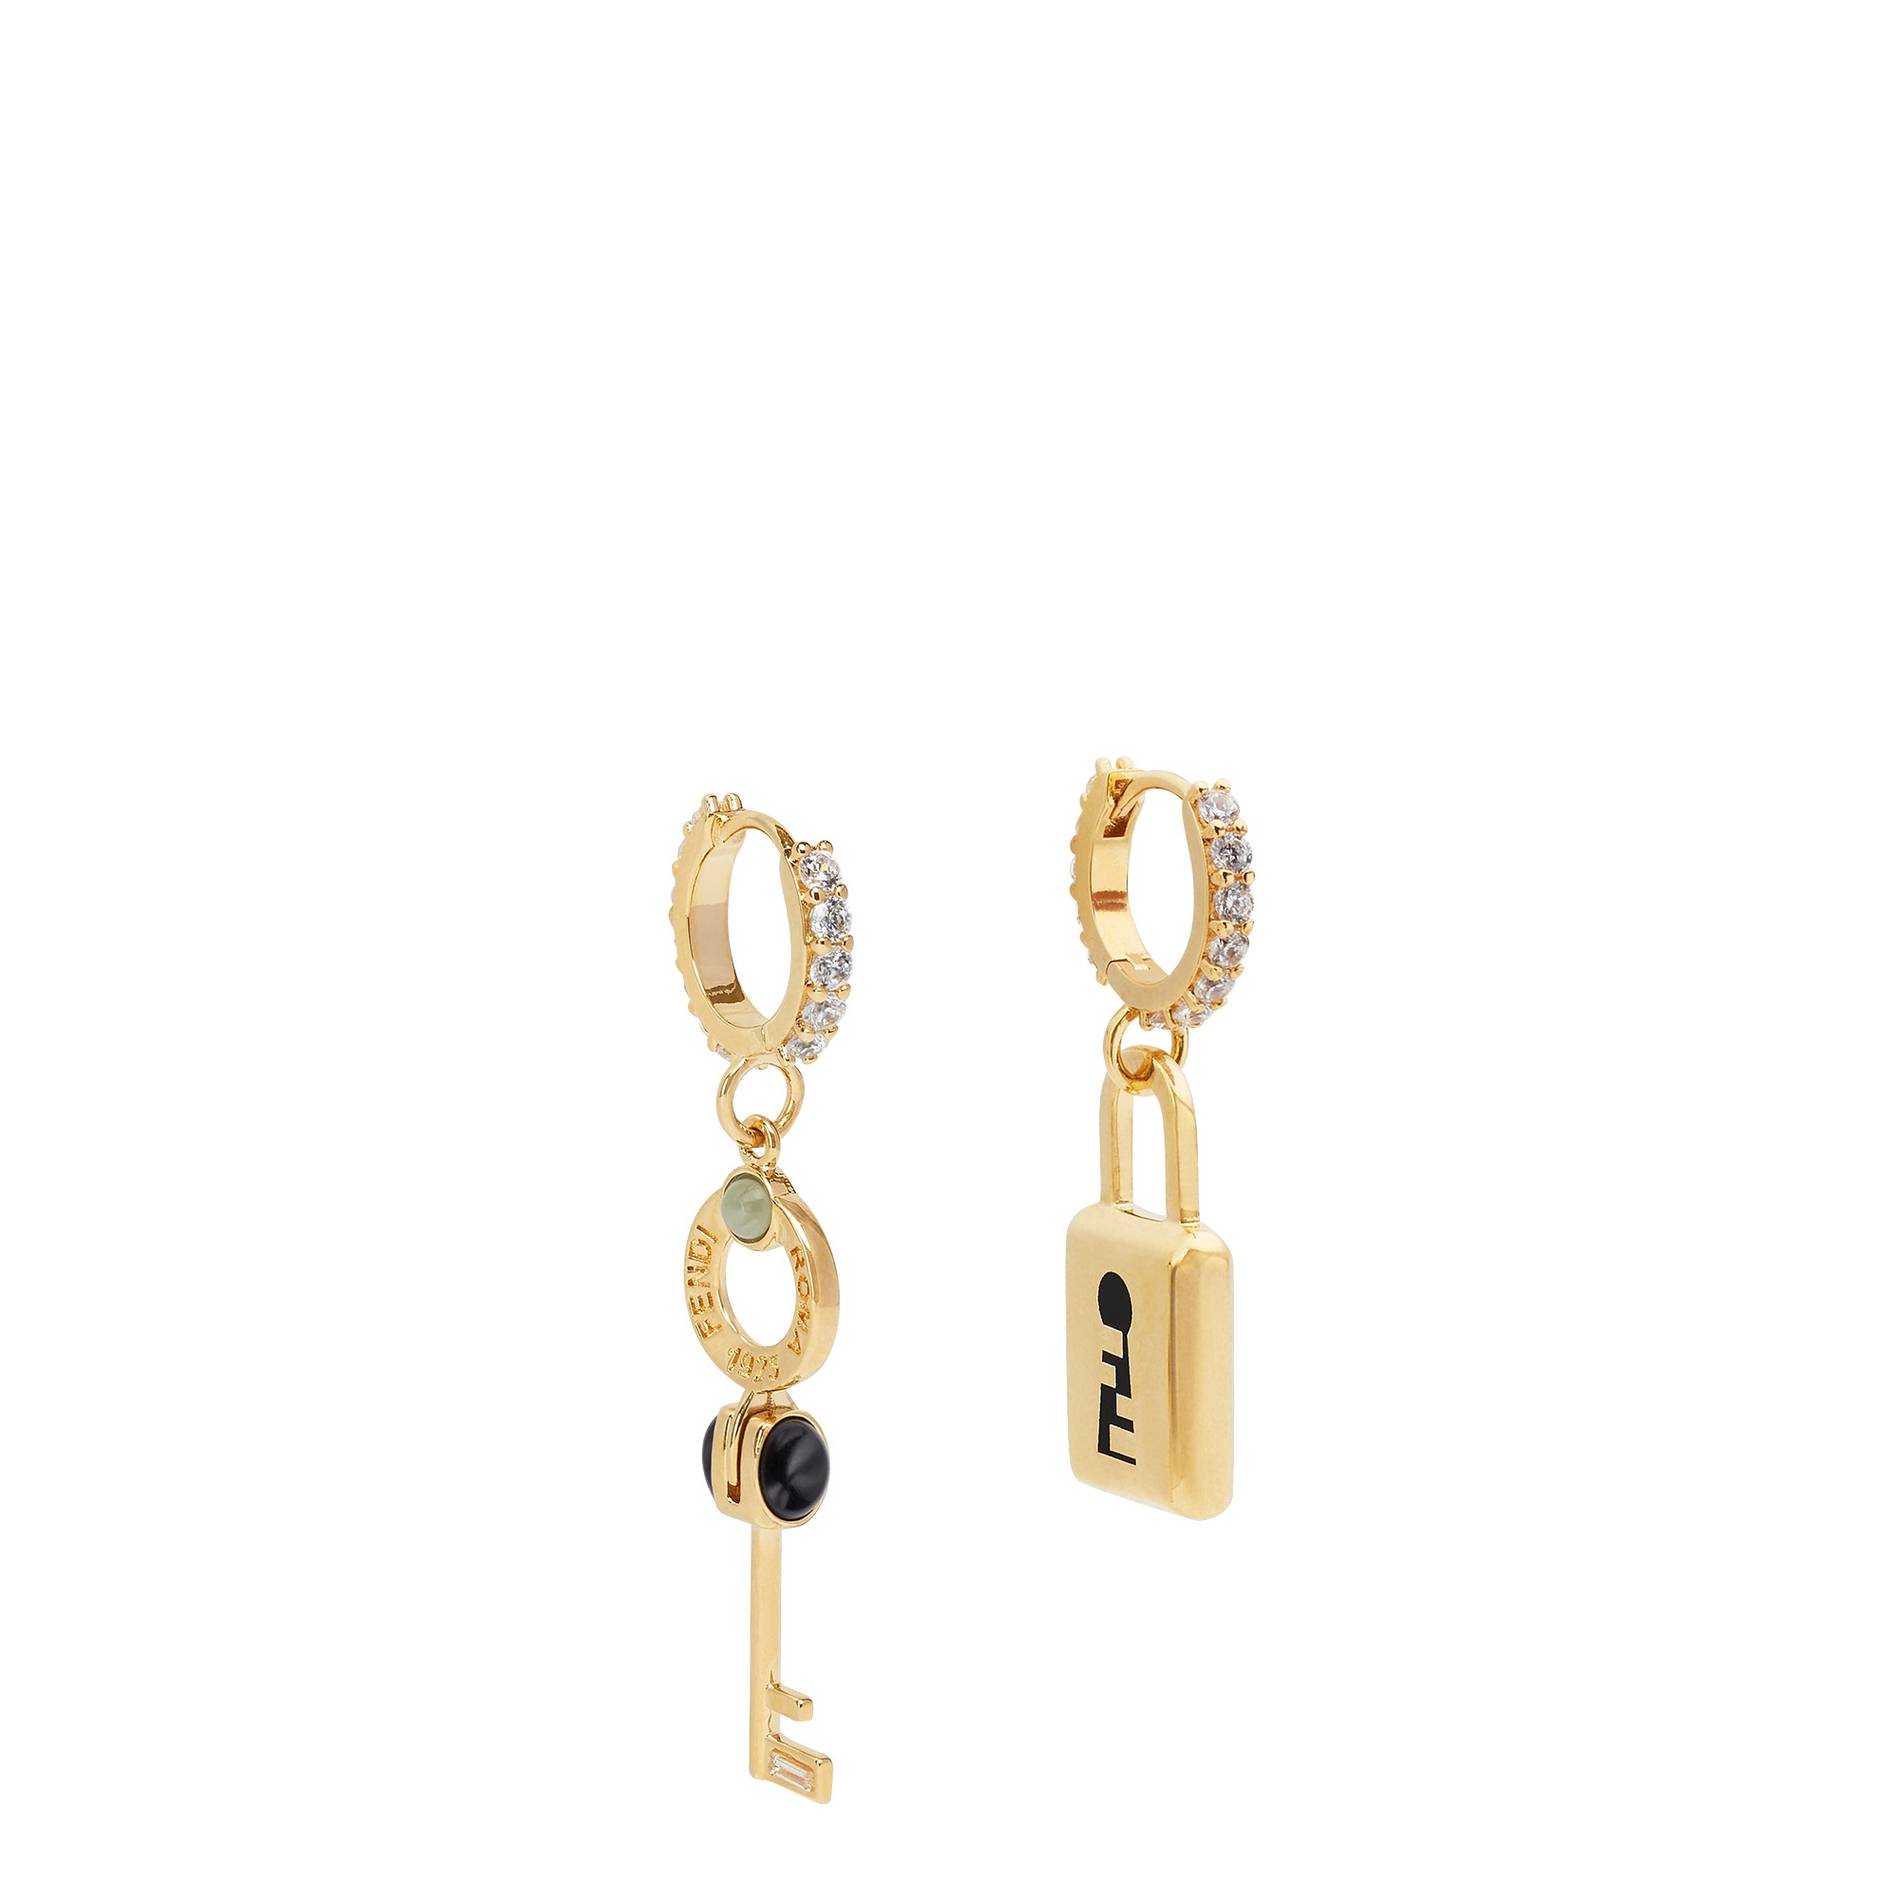 gift-guide-jewelry-key-lock-earrings.jpg